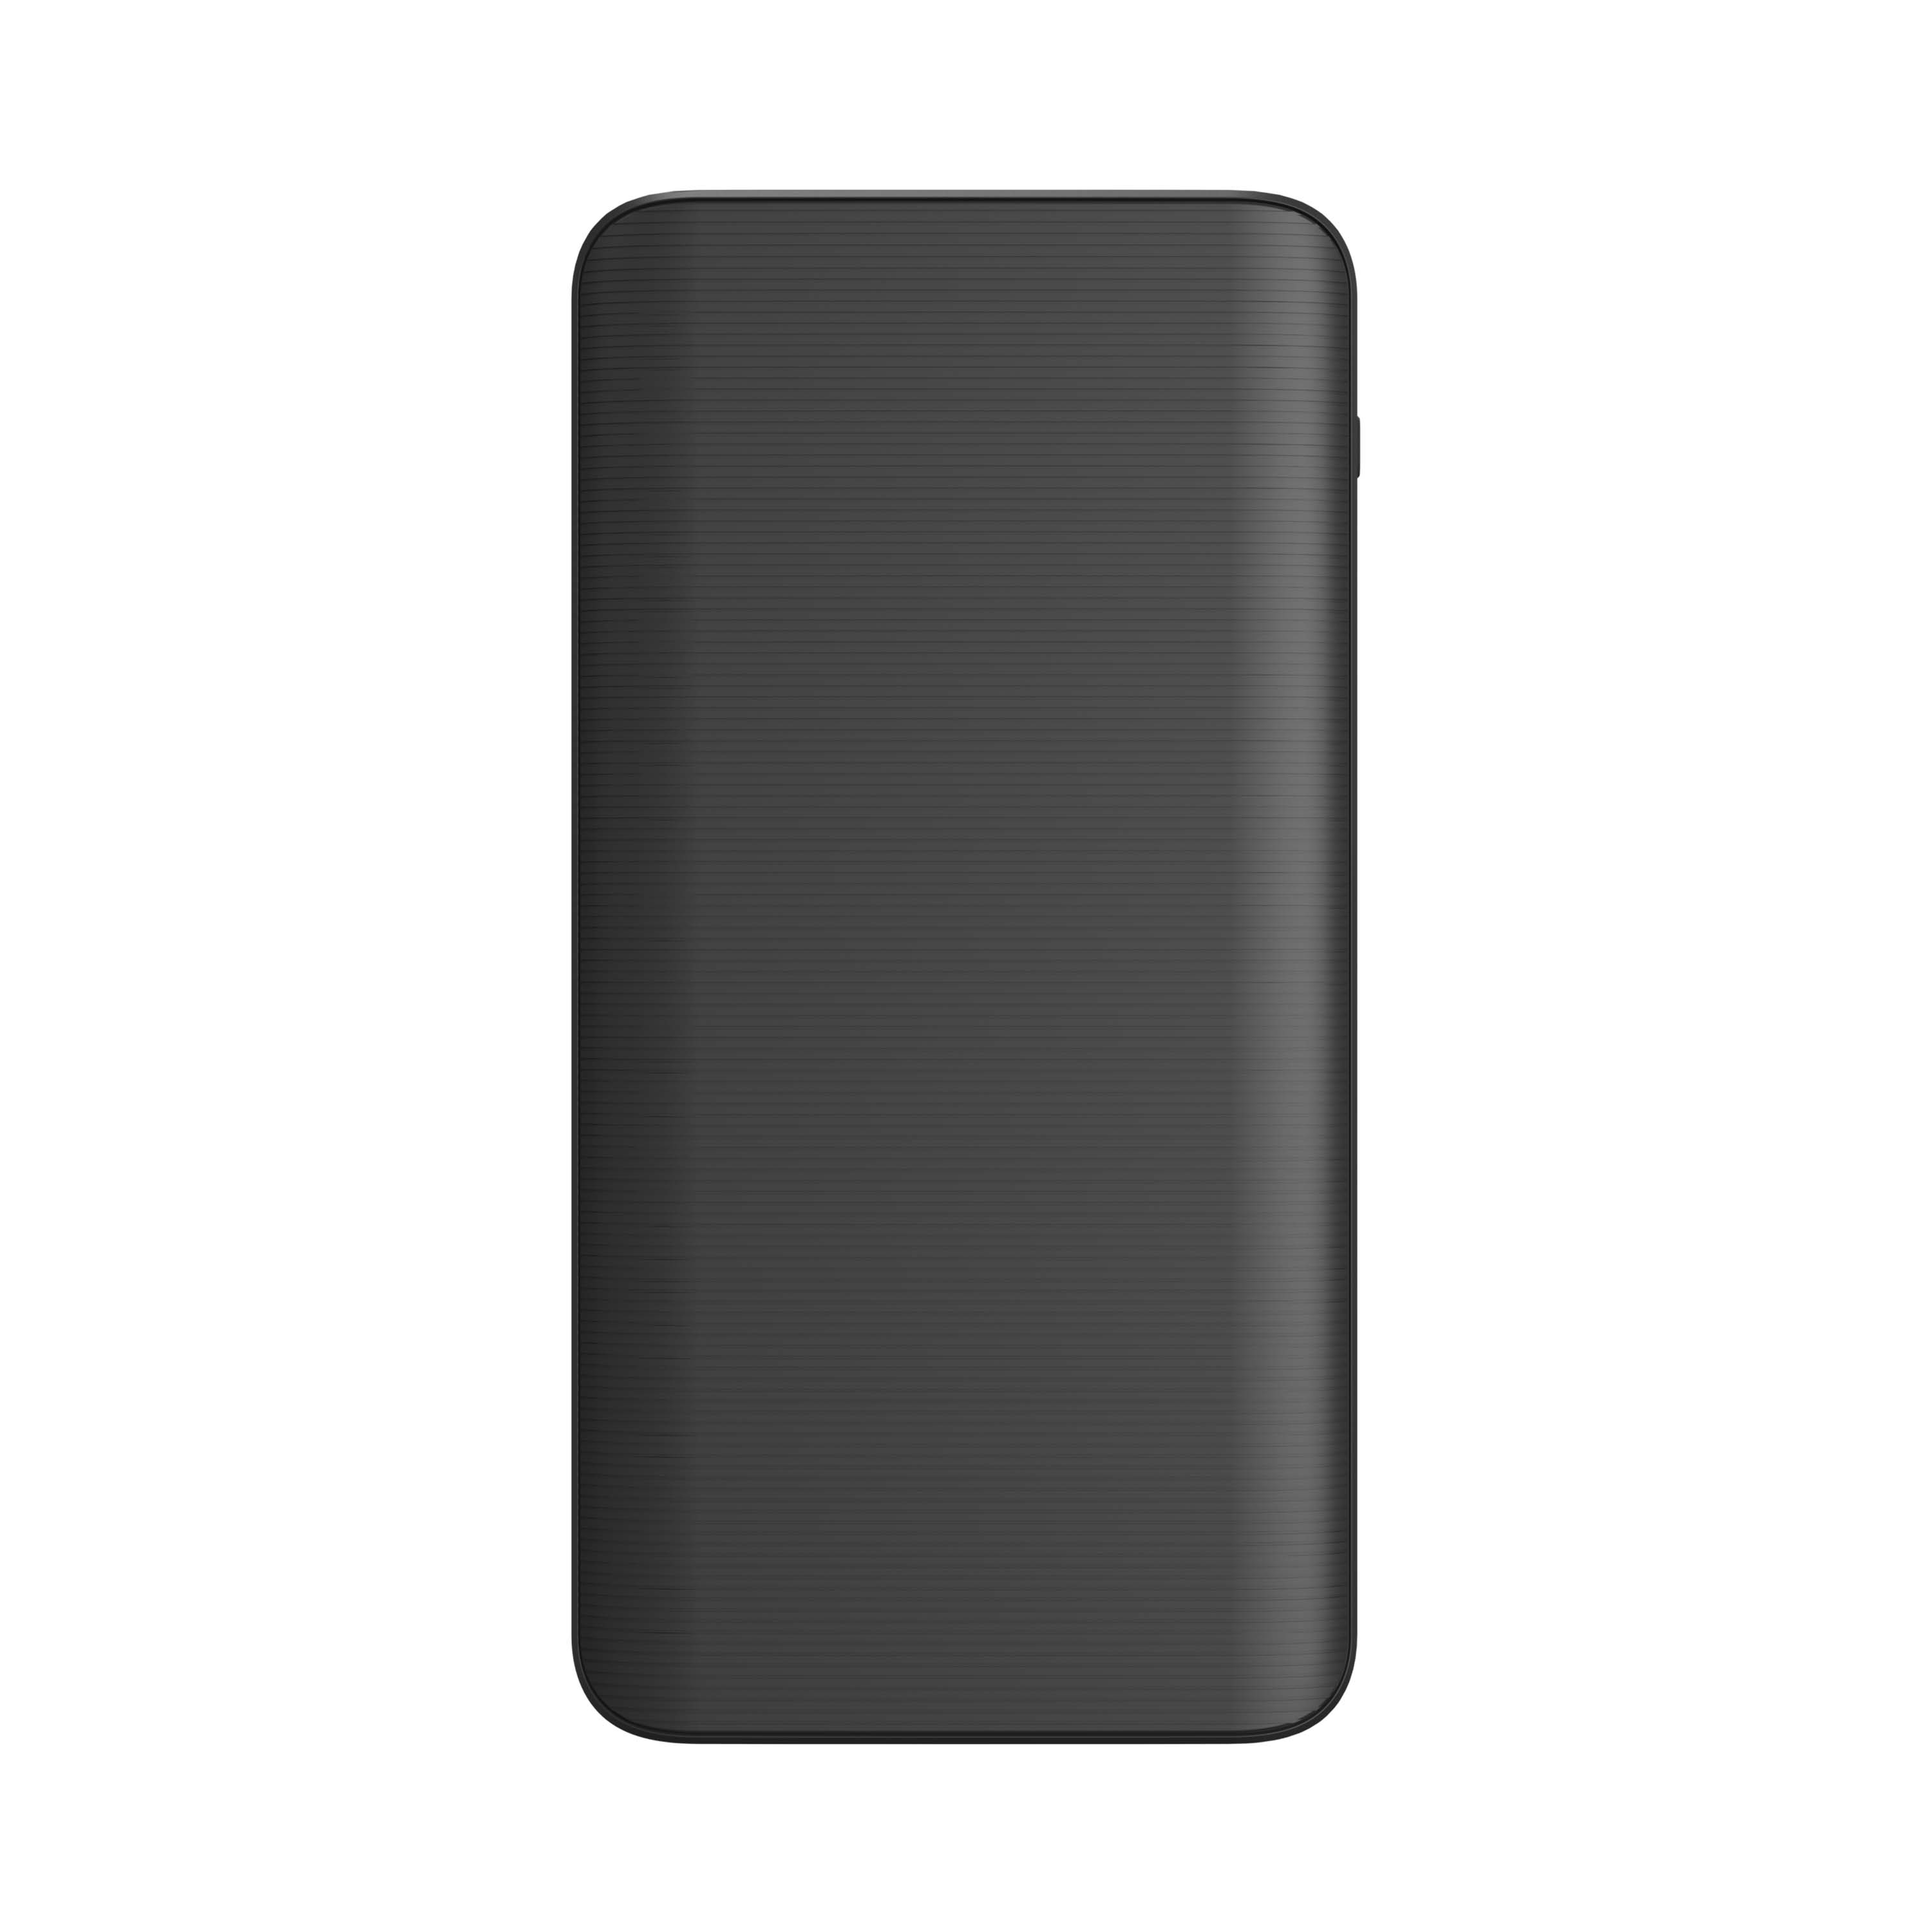 Batería portátil de 10,000mAh mophie power boost con puertos USB-C y USB-A - Negro